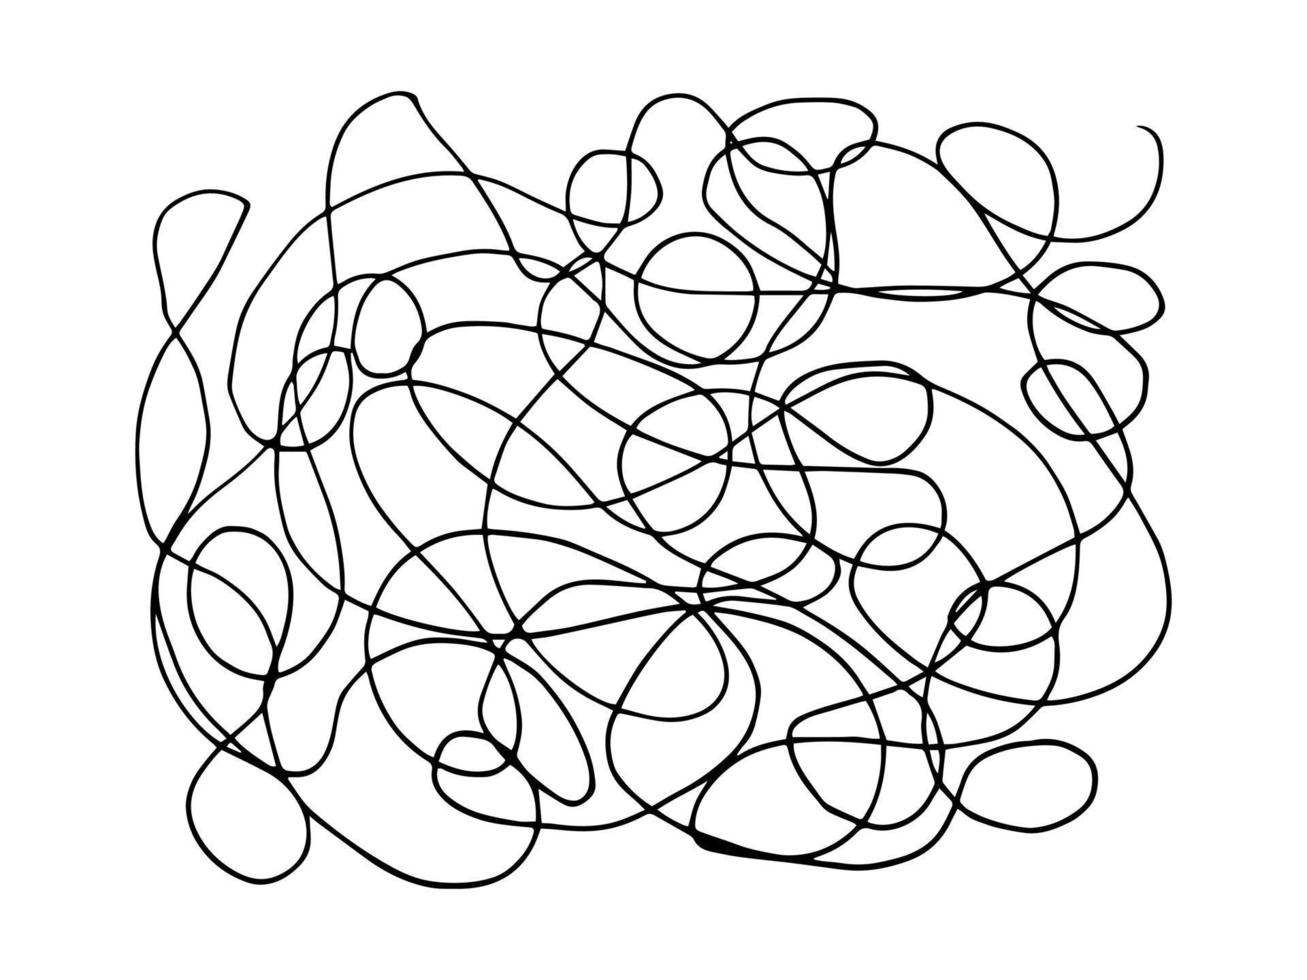 mão desenhada rabisco emaranhado abstrato doodle. vetor linhas caóticas aleatórias.